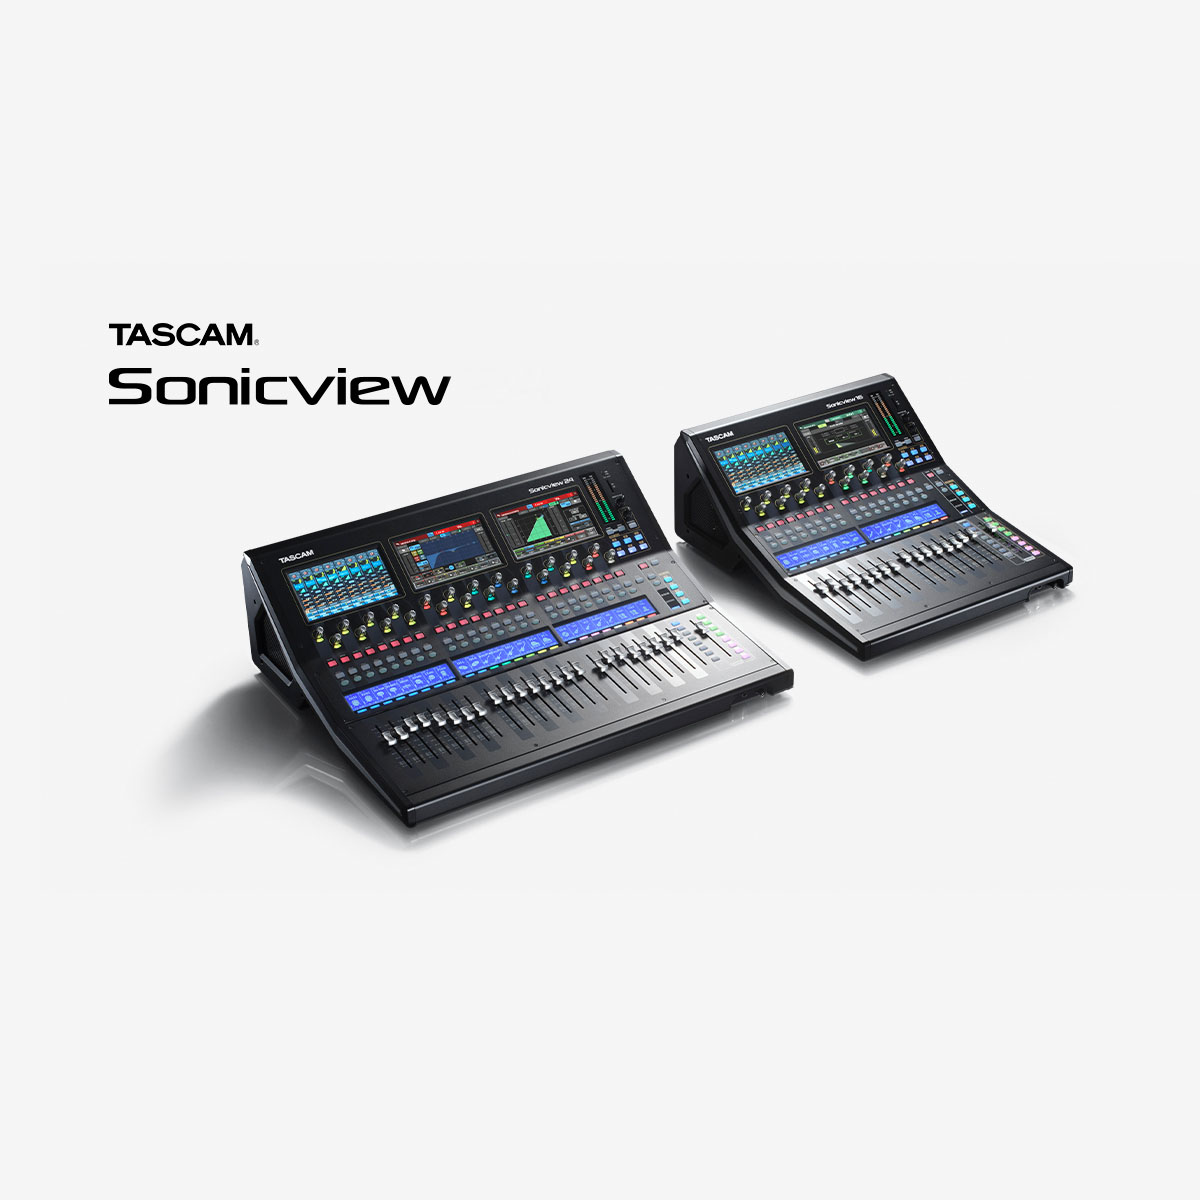 『TASCAM Sonicview シリーズ』の最新ファームウェア V1.5.2およびソフトウェアV1.5.1をリリース